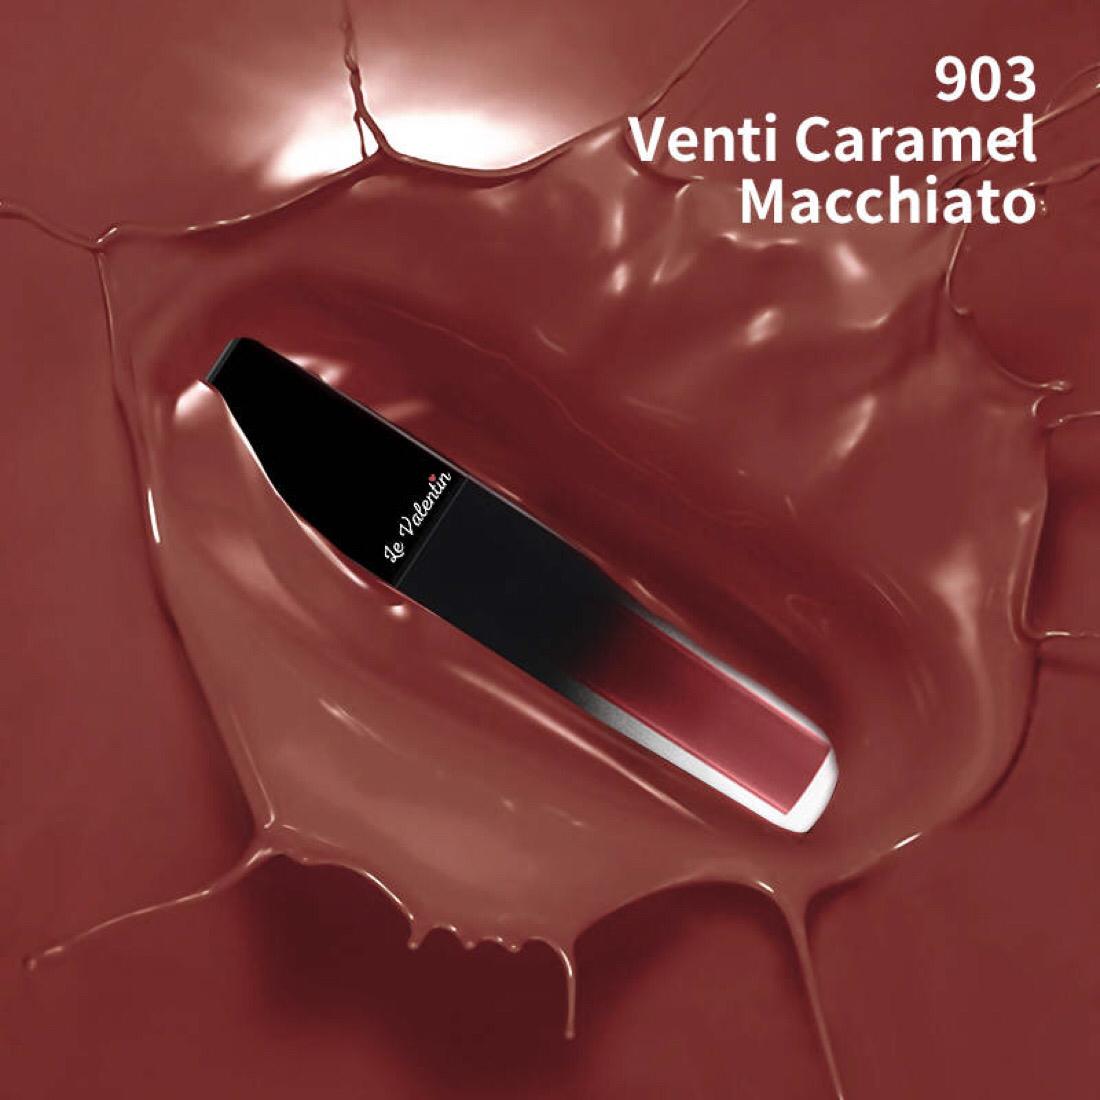 Le Valentin Day Long Lip Mousse Lipstick  - Venti Caramel Macchiato - 903